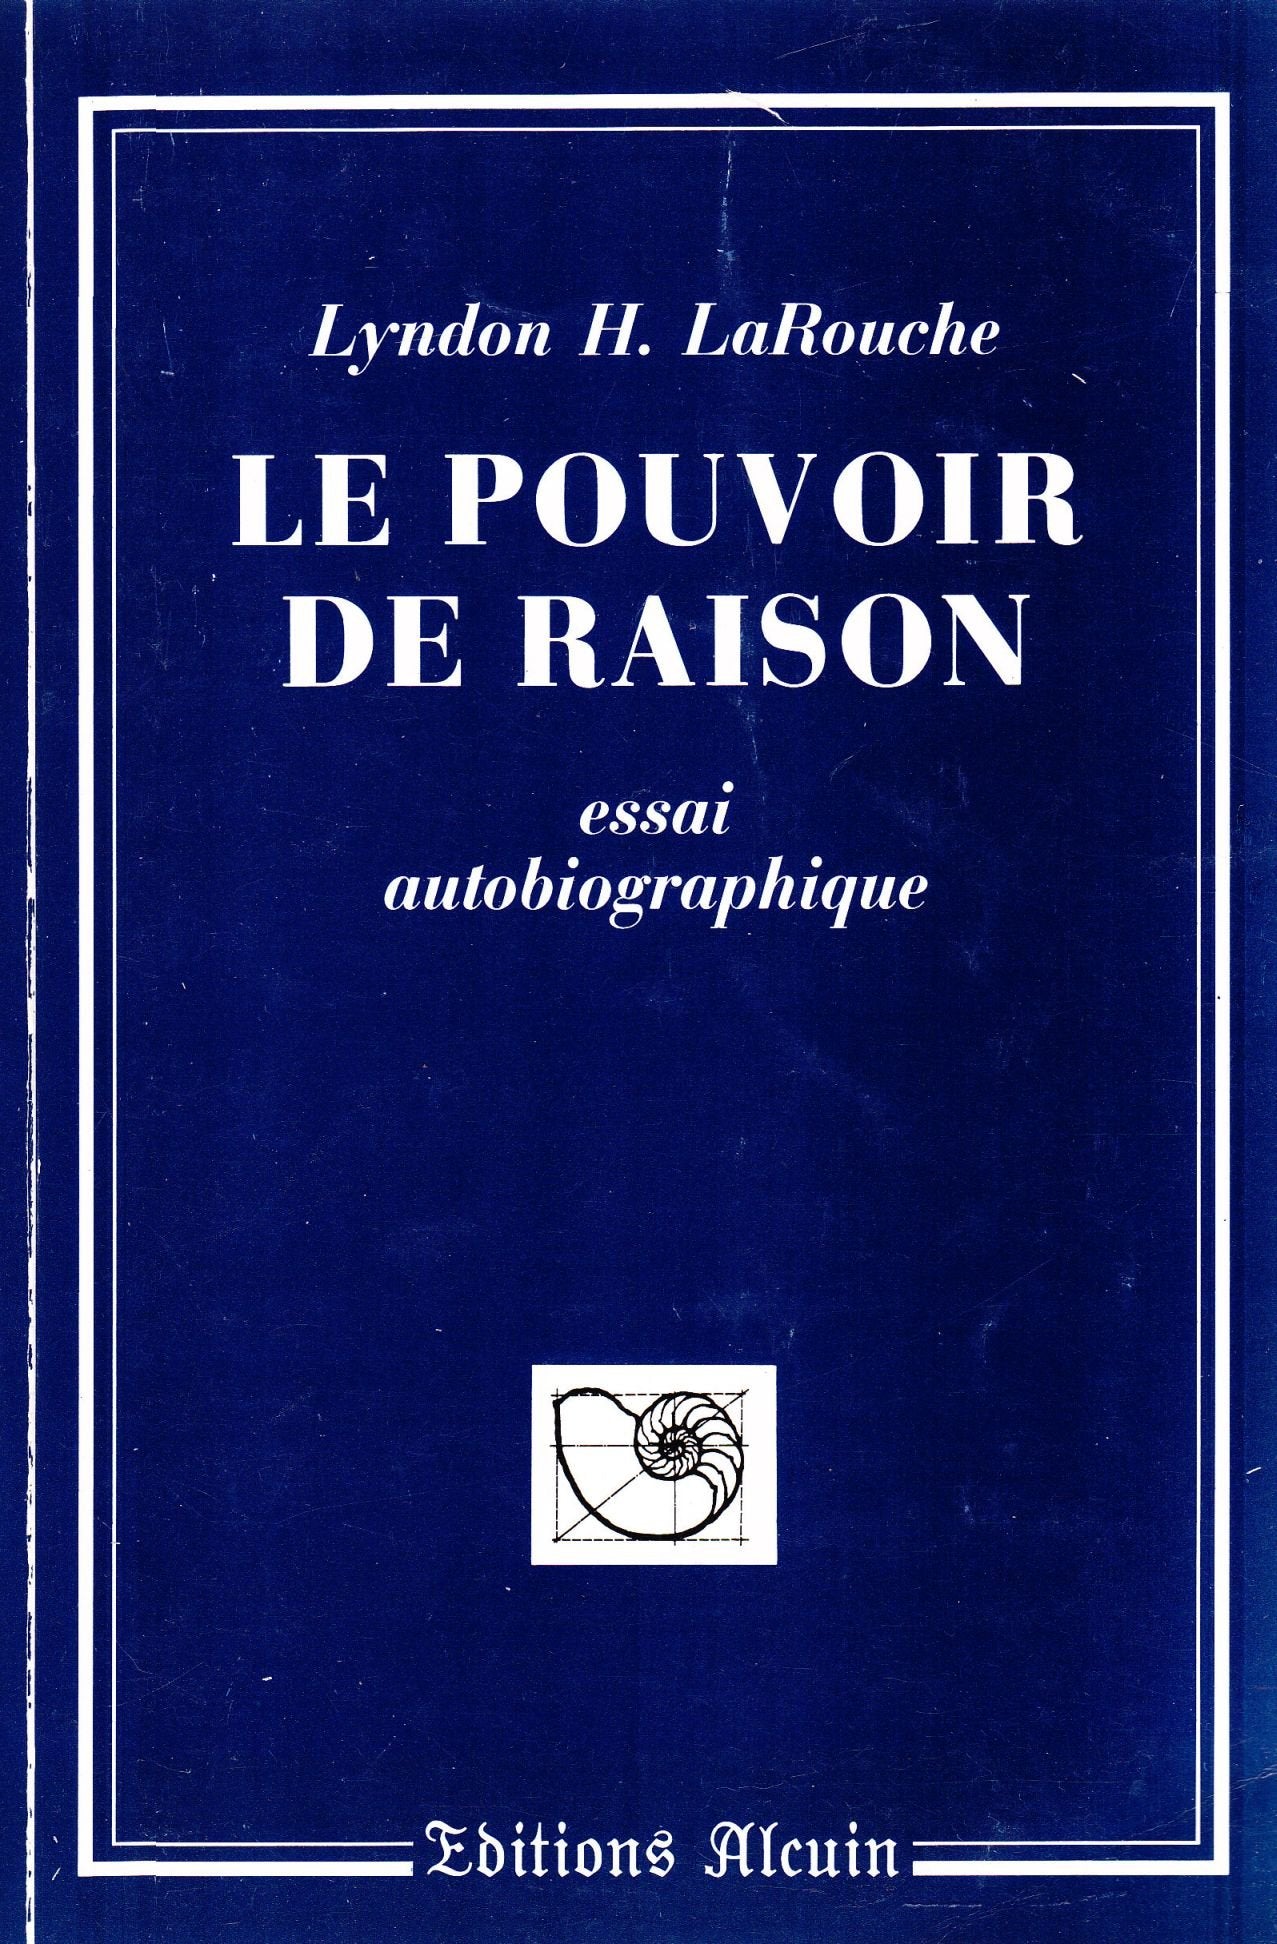 Livre ISBN 2907072013 Le pouvoir de raison (Lyndon H. LaRouche)